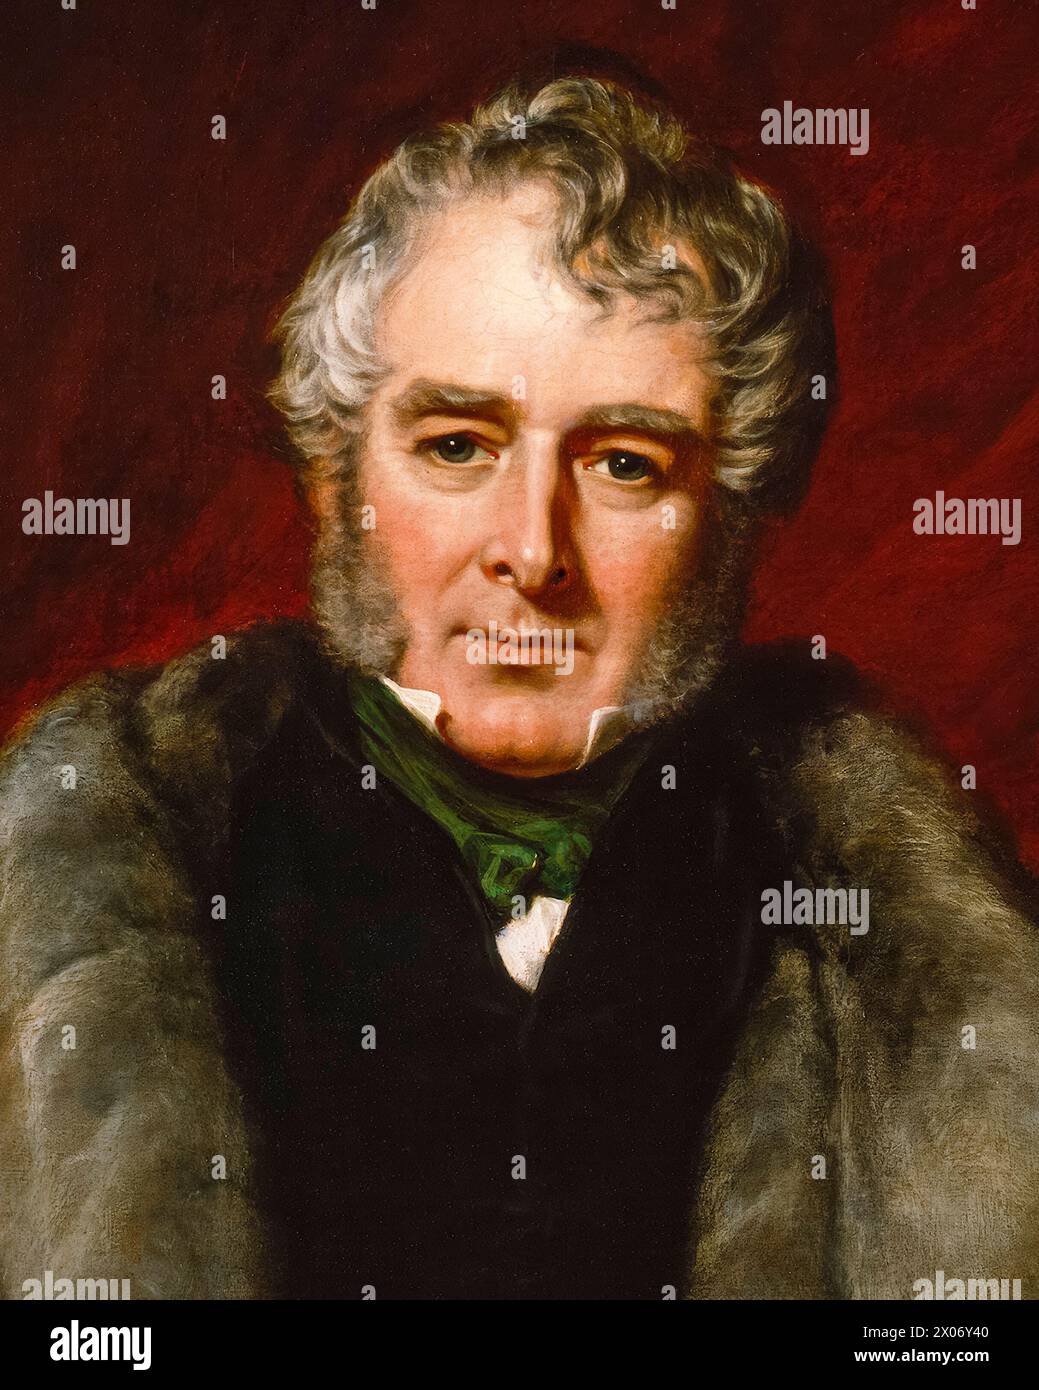 William Lamb, II visconte Melbourne (1779-1848), noto come 'Lord Melbourne', primo ministro del Regno Unito luglio-novembre 1834 e 1835-1841, ritratto dipinto ad olio su tela di John Partridge, 1844 Foto Stock